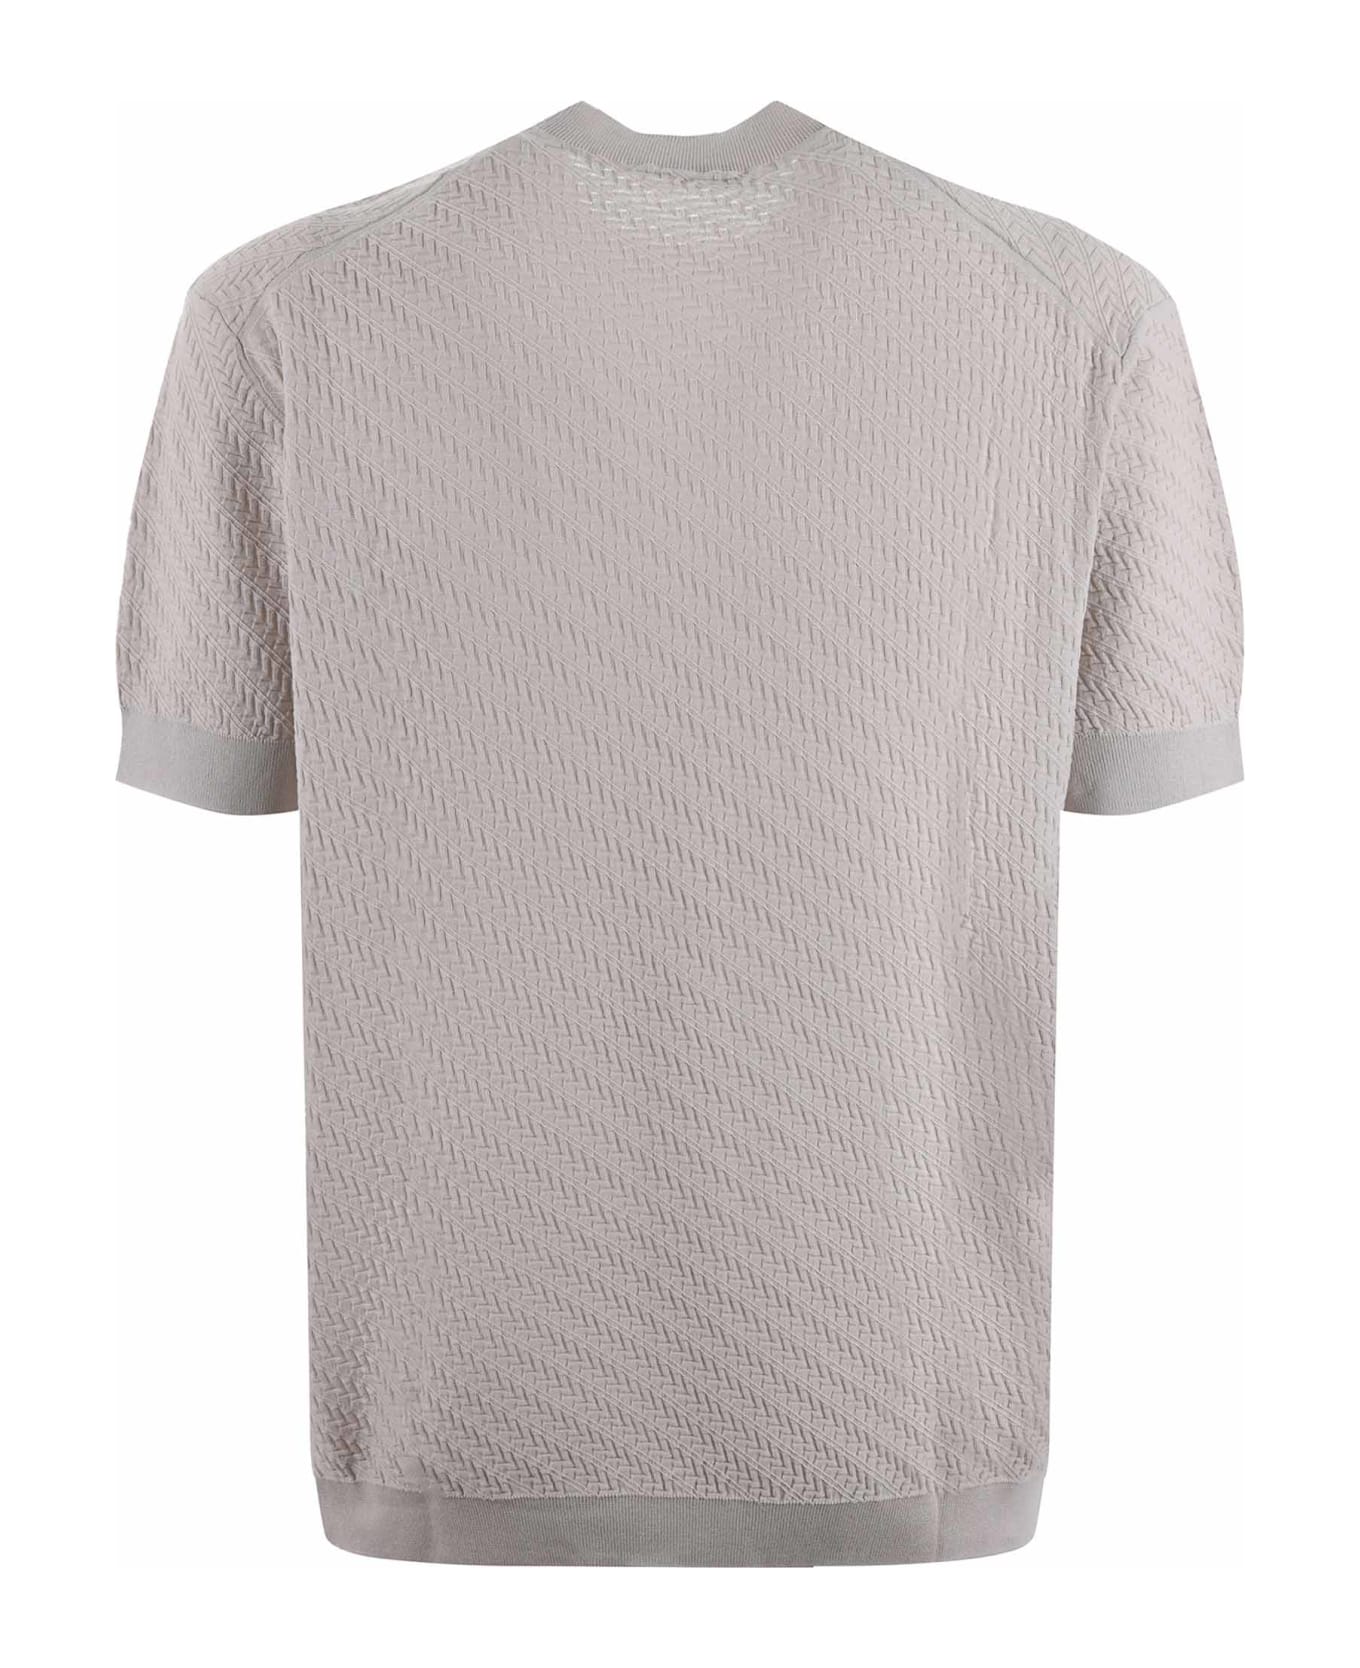 Paolo Pecora T-shirt In Light Cotton Thread - Beige chiaro シャツ